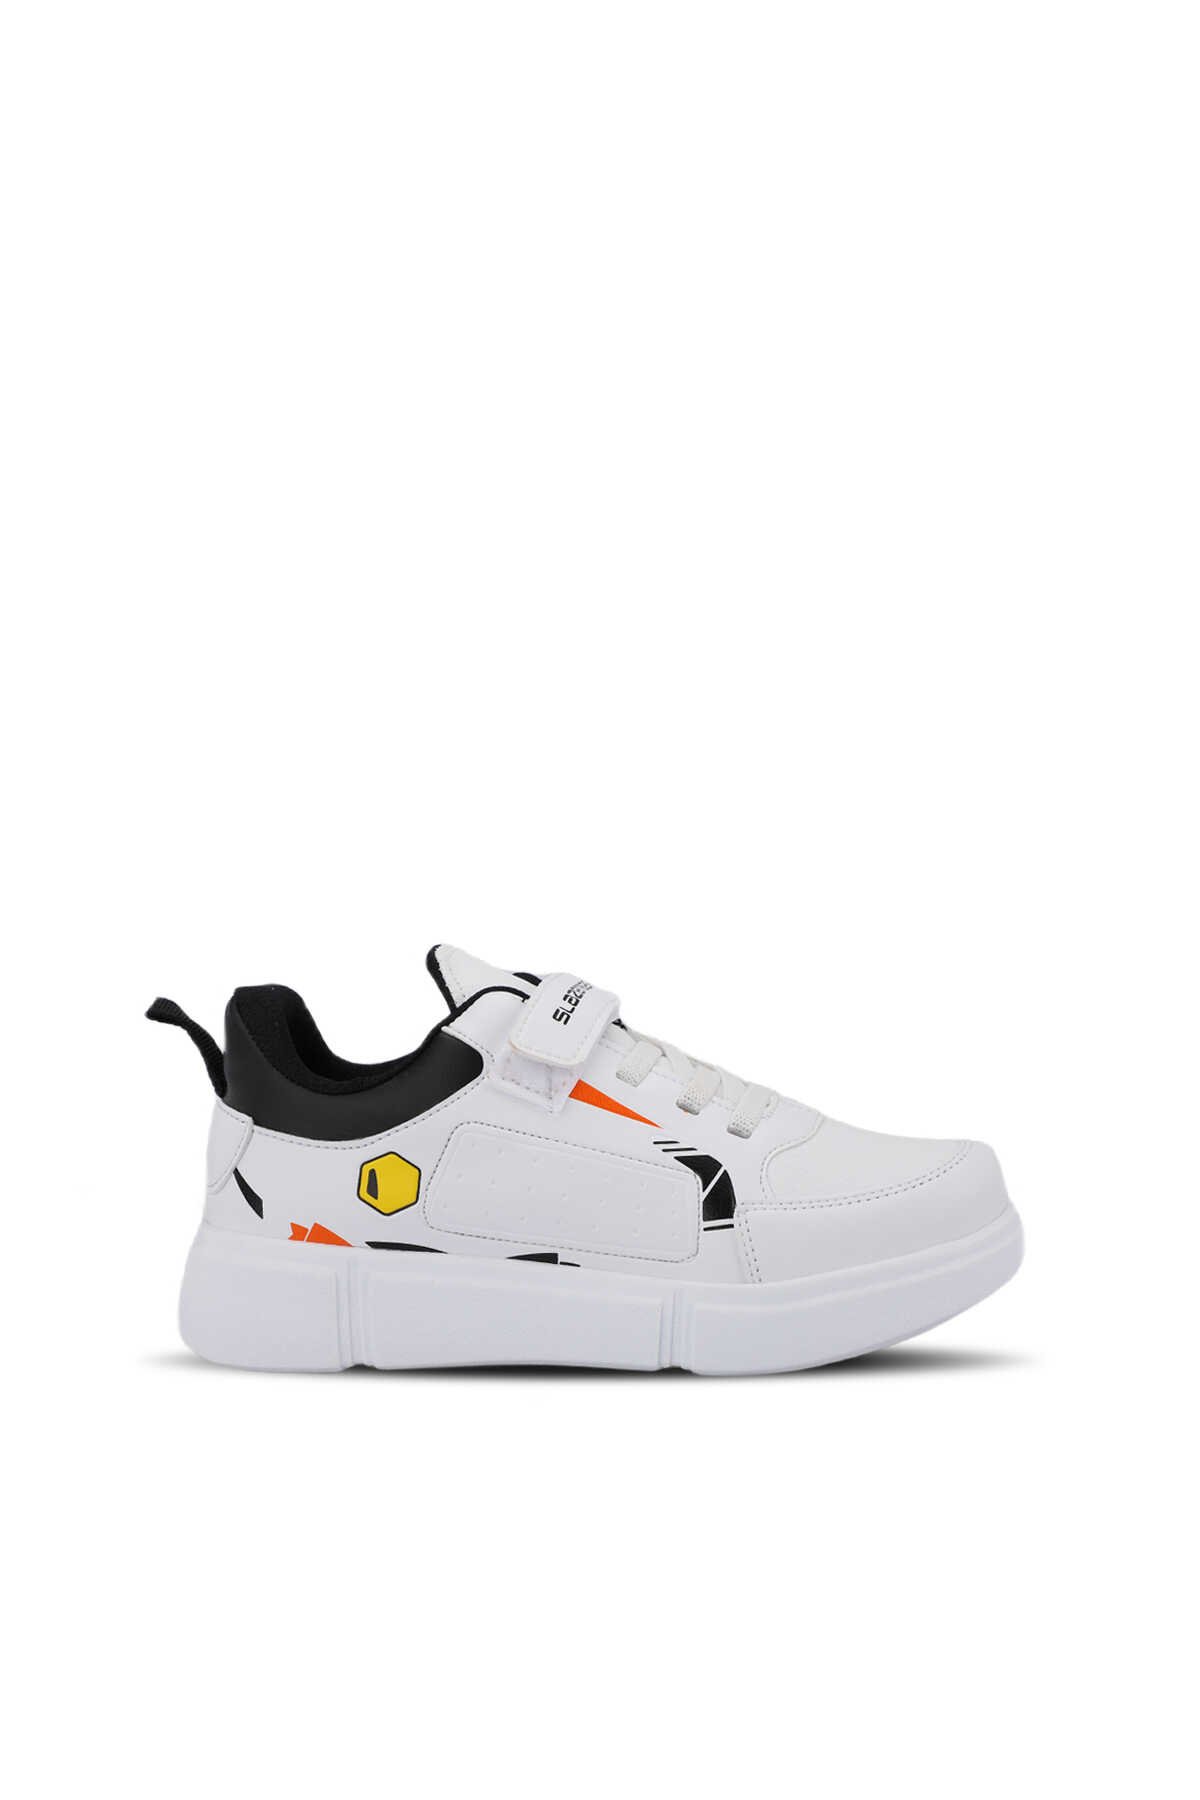 Slazenger - KEPA KTN Sneaker Unisex Çocuk Ayakkabı Beyaz / Siyah